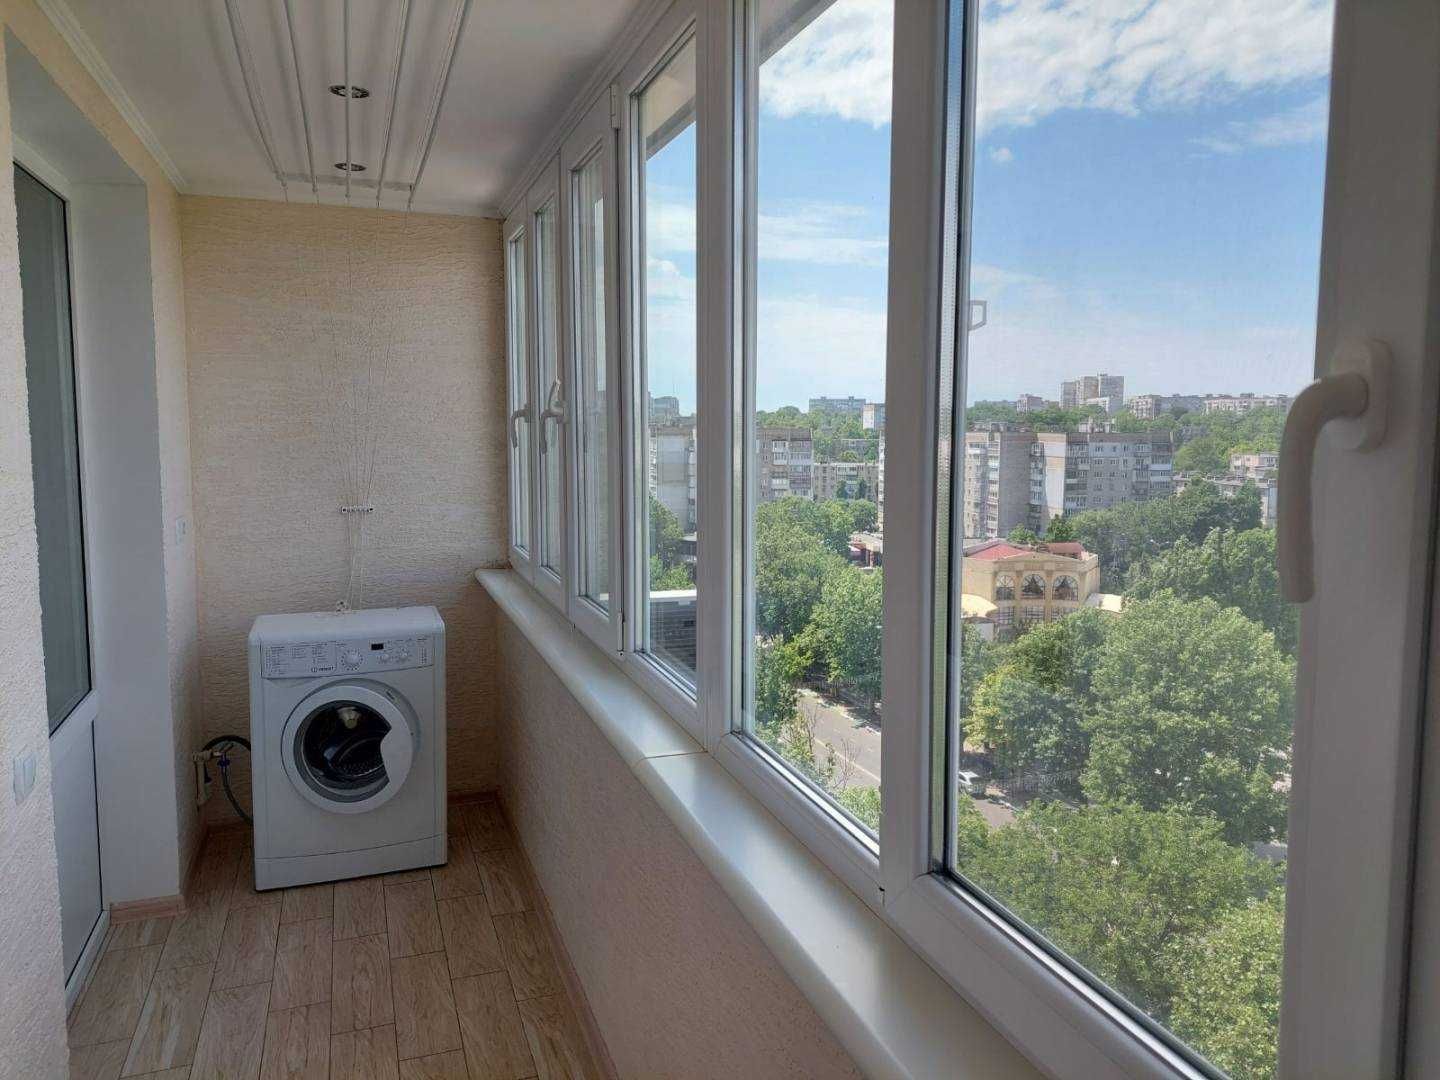 У продажу чотирикімнатна квартира у центрі міста Чорноморська.